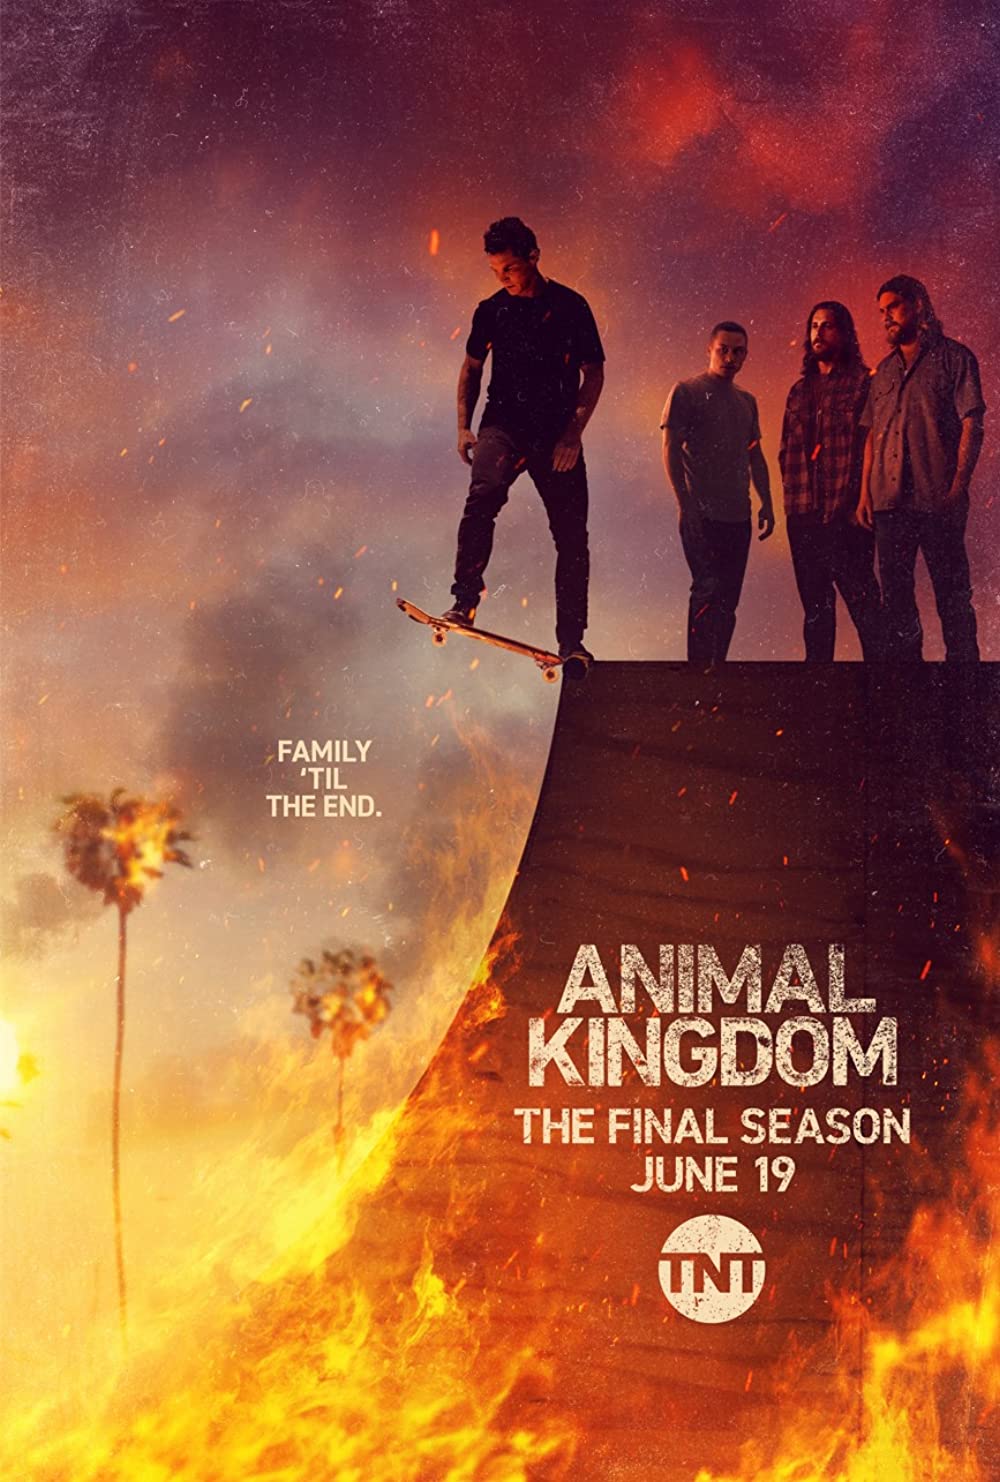 ดูหนังออนไลน์ฟรี Animal Kingdom Season 1 EP.7 แอนนิเมิล คิงด้อม ซีซั่น 1 ตอนที่ 7 (ซับไทย)